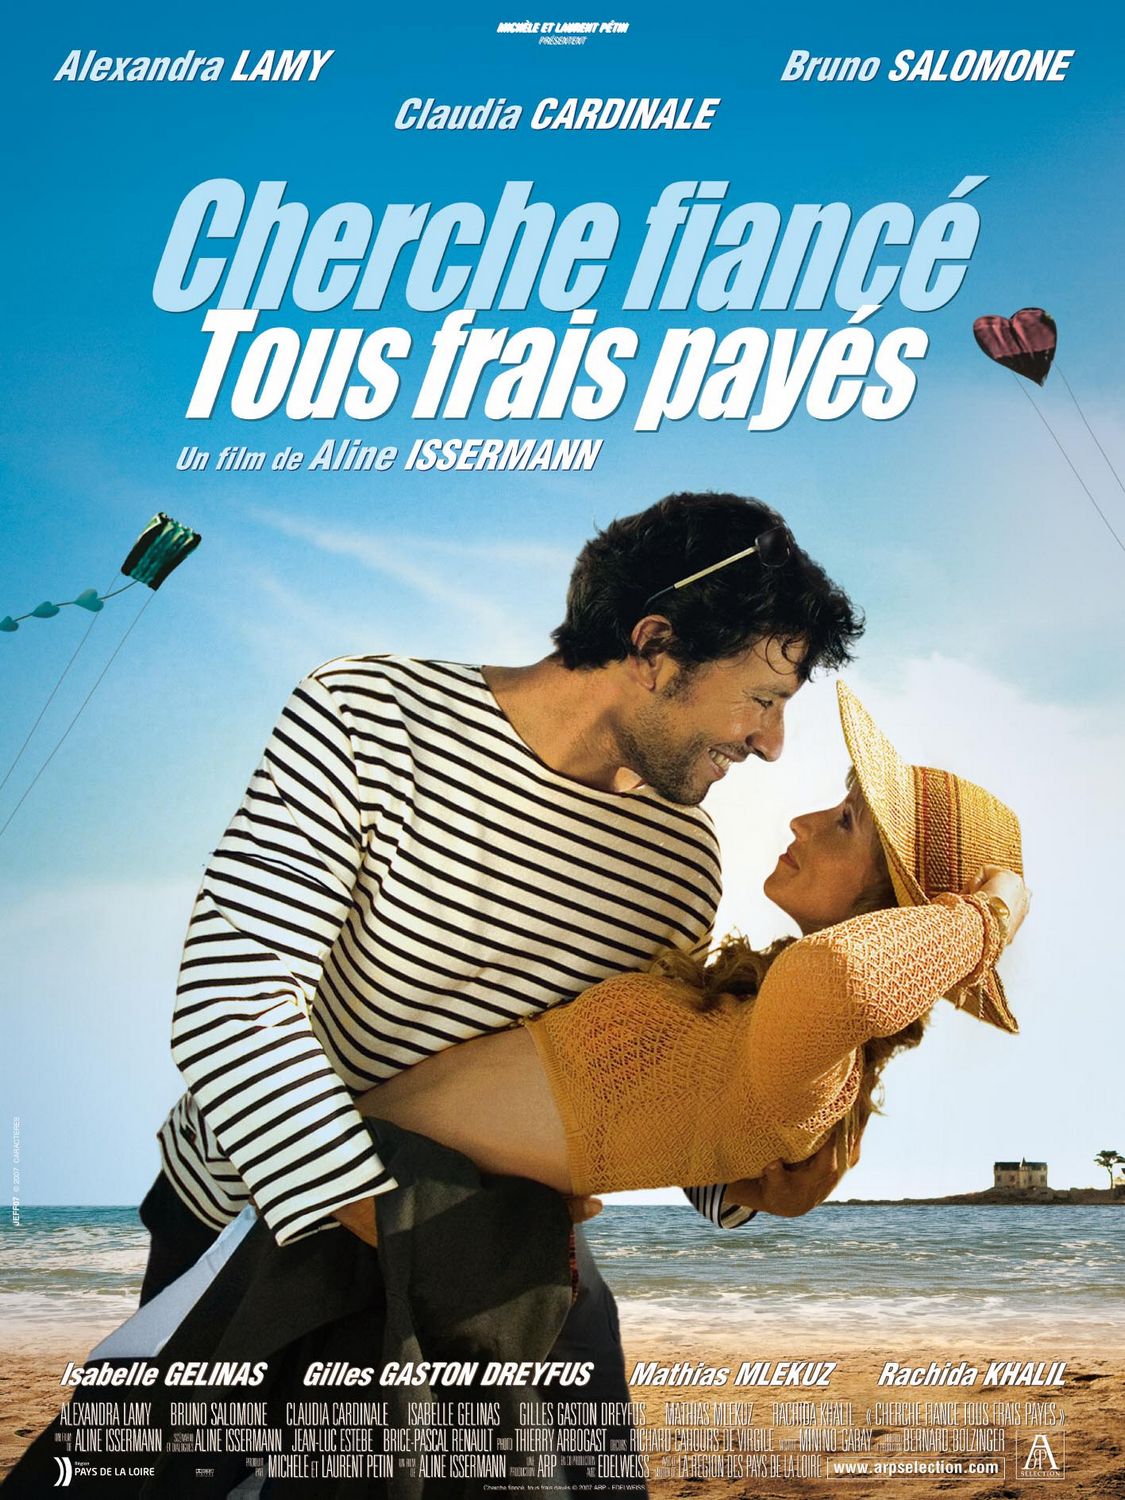 Extra Large Movie Poster Image for Tous frais payés 